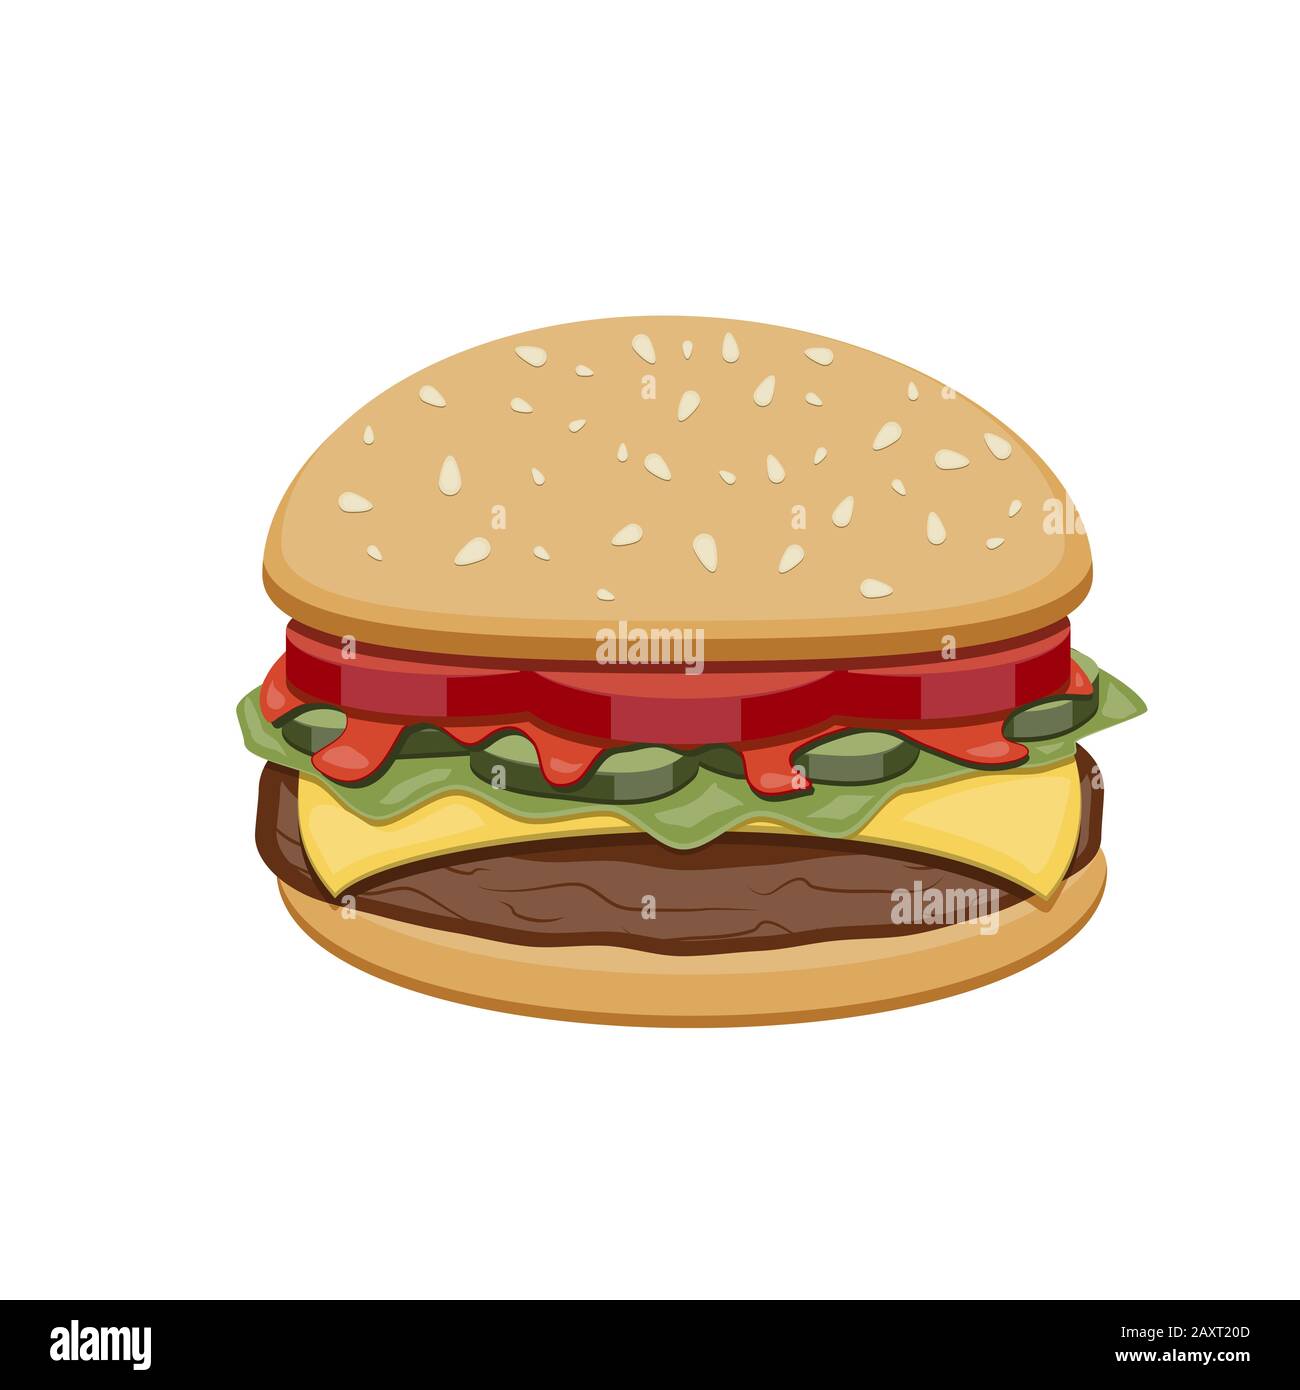 Dessin vectoriel de hamburgers avec fromage, tomates, hache, laitue, concombre sur l'illustration pour concevoir un menu de restauration rapide. Icônes isolées Hamburger. Illustration de Vecteur